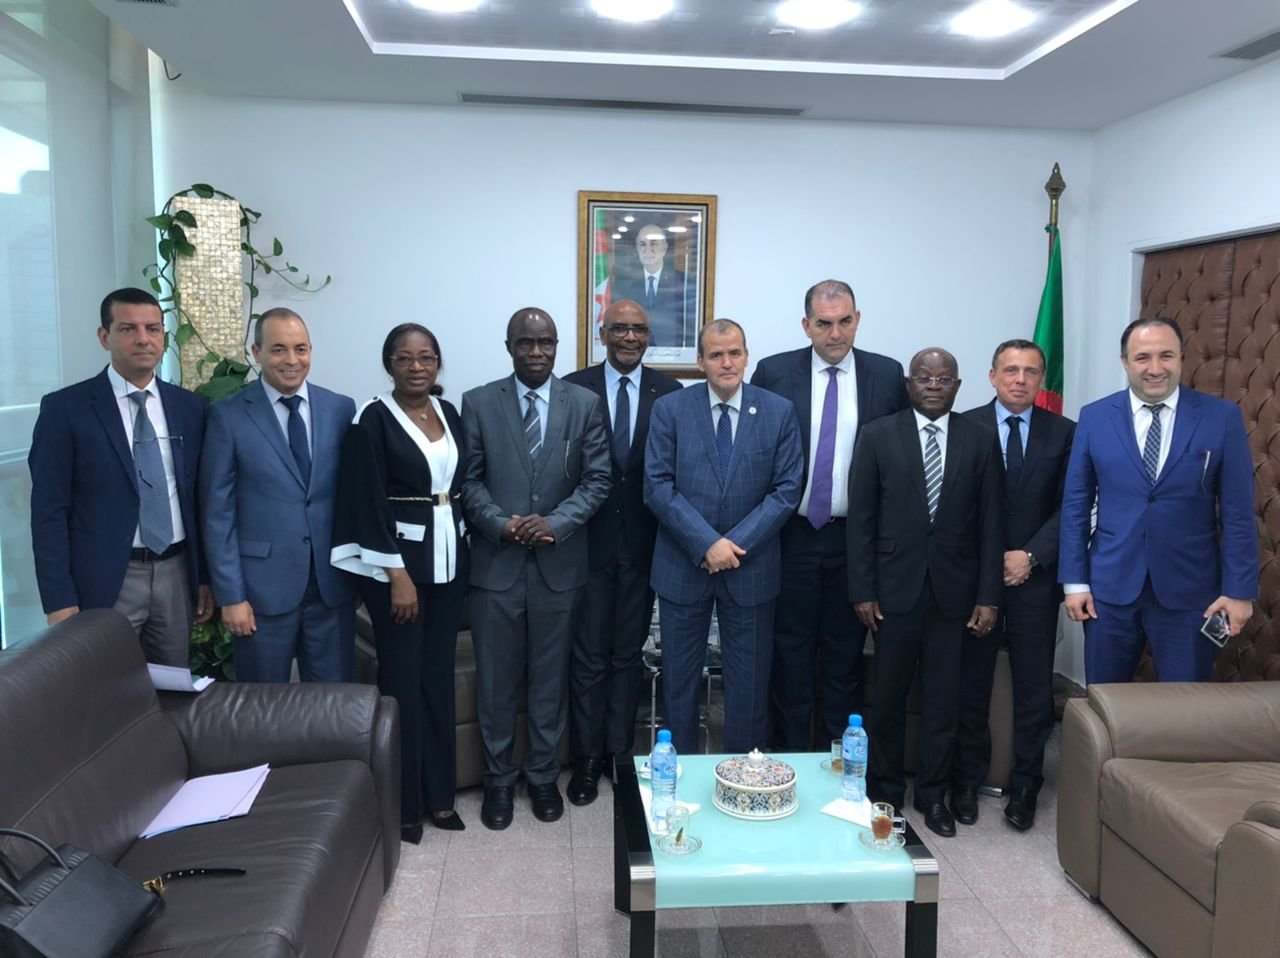 Le Président de la CGECI M. Jean-Marie ACKAH, en compagnie d'une délégation du Secteur Privé, ont effectué une visite de travail à la Confédération Algérienne du Patronat Citoyen (CAPC) en Algérie, dans le cadre de la redynamisation des échanges commerciaux entre la Côte d'Ivoire et l'Algérie.